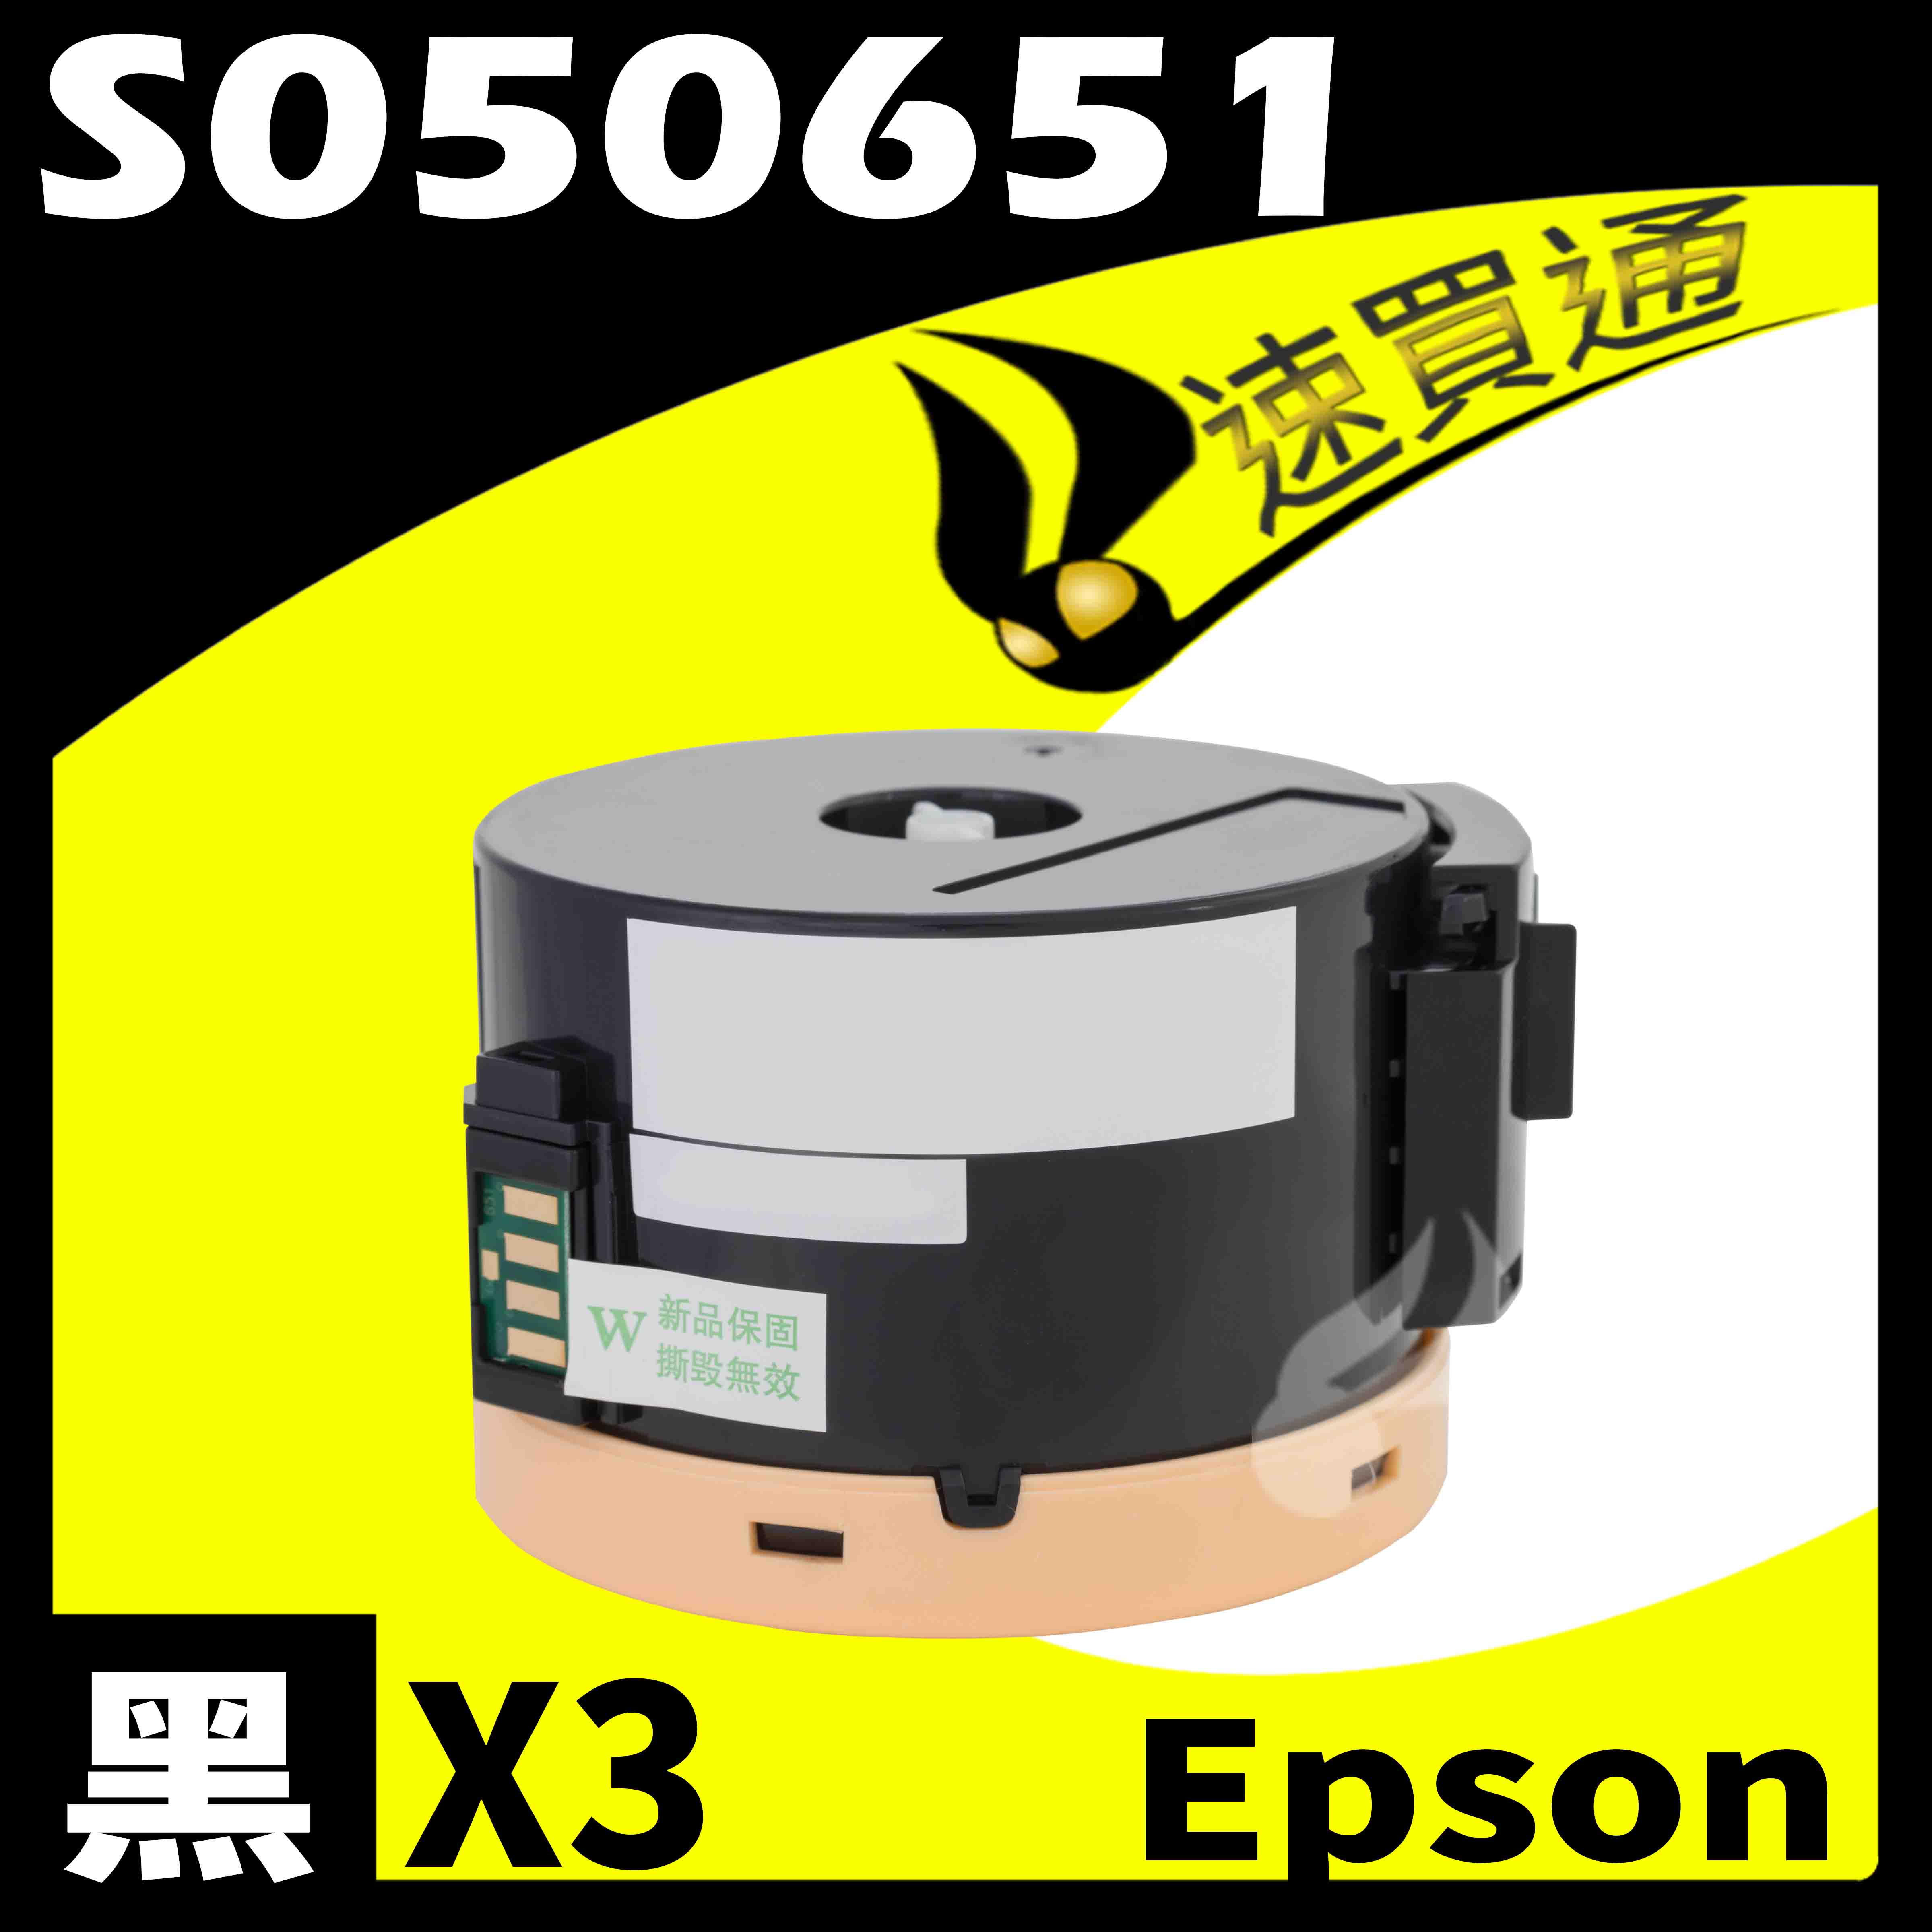 【速買通】超值3件組 EPSON M1400/MX14NF/S050651 (高印量) 相容碳粉匣